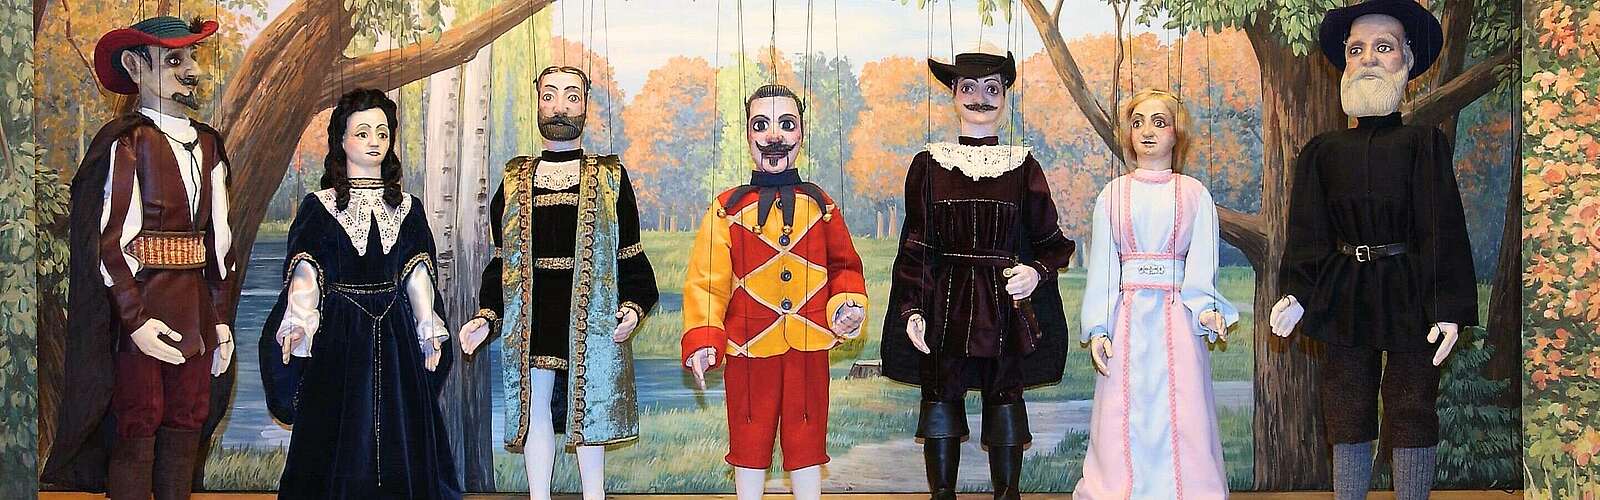 Marionettenpuppen auf der Bühne,
        
    

        Foto: Museum des Mitteldeutschen Wandermarionettentheaters/Kein Urheber bekannt